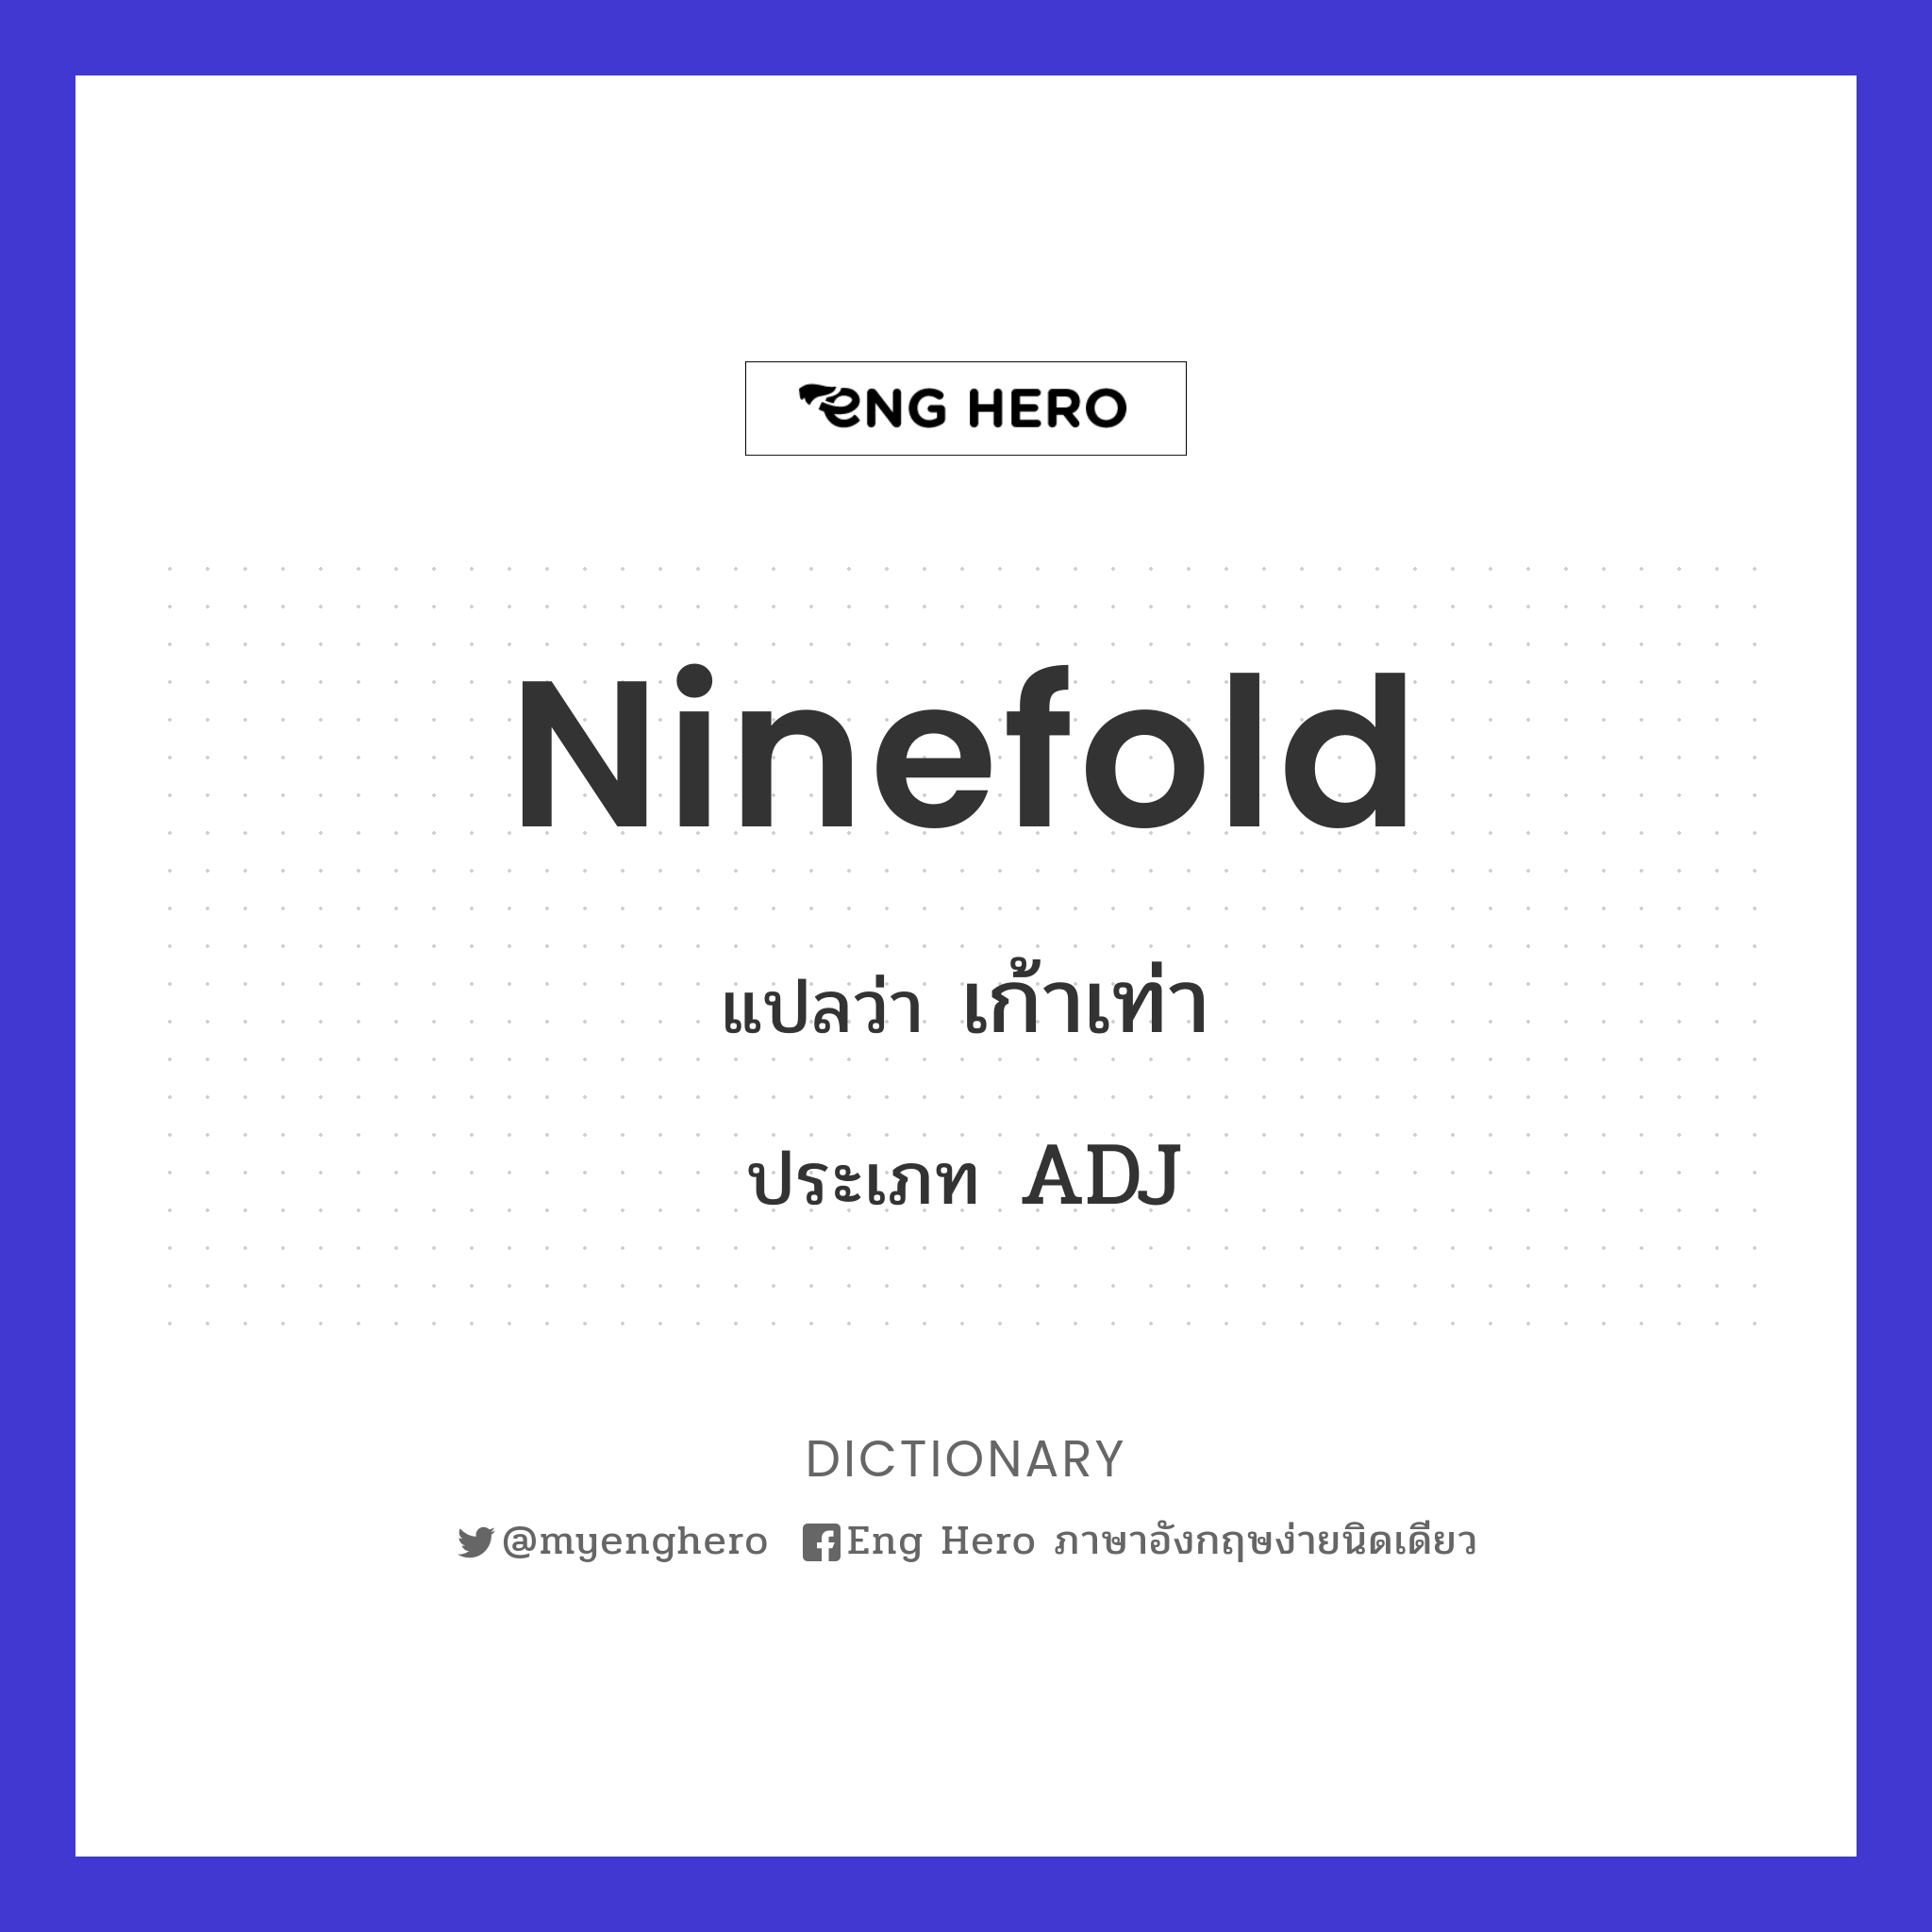 ninefold